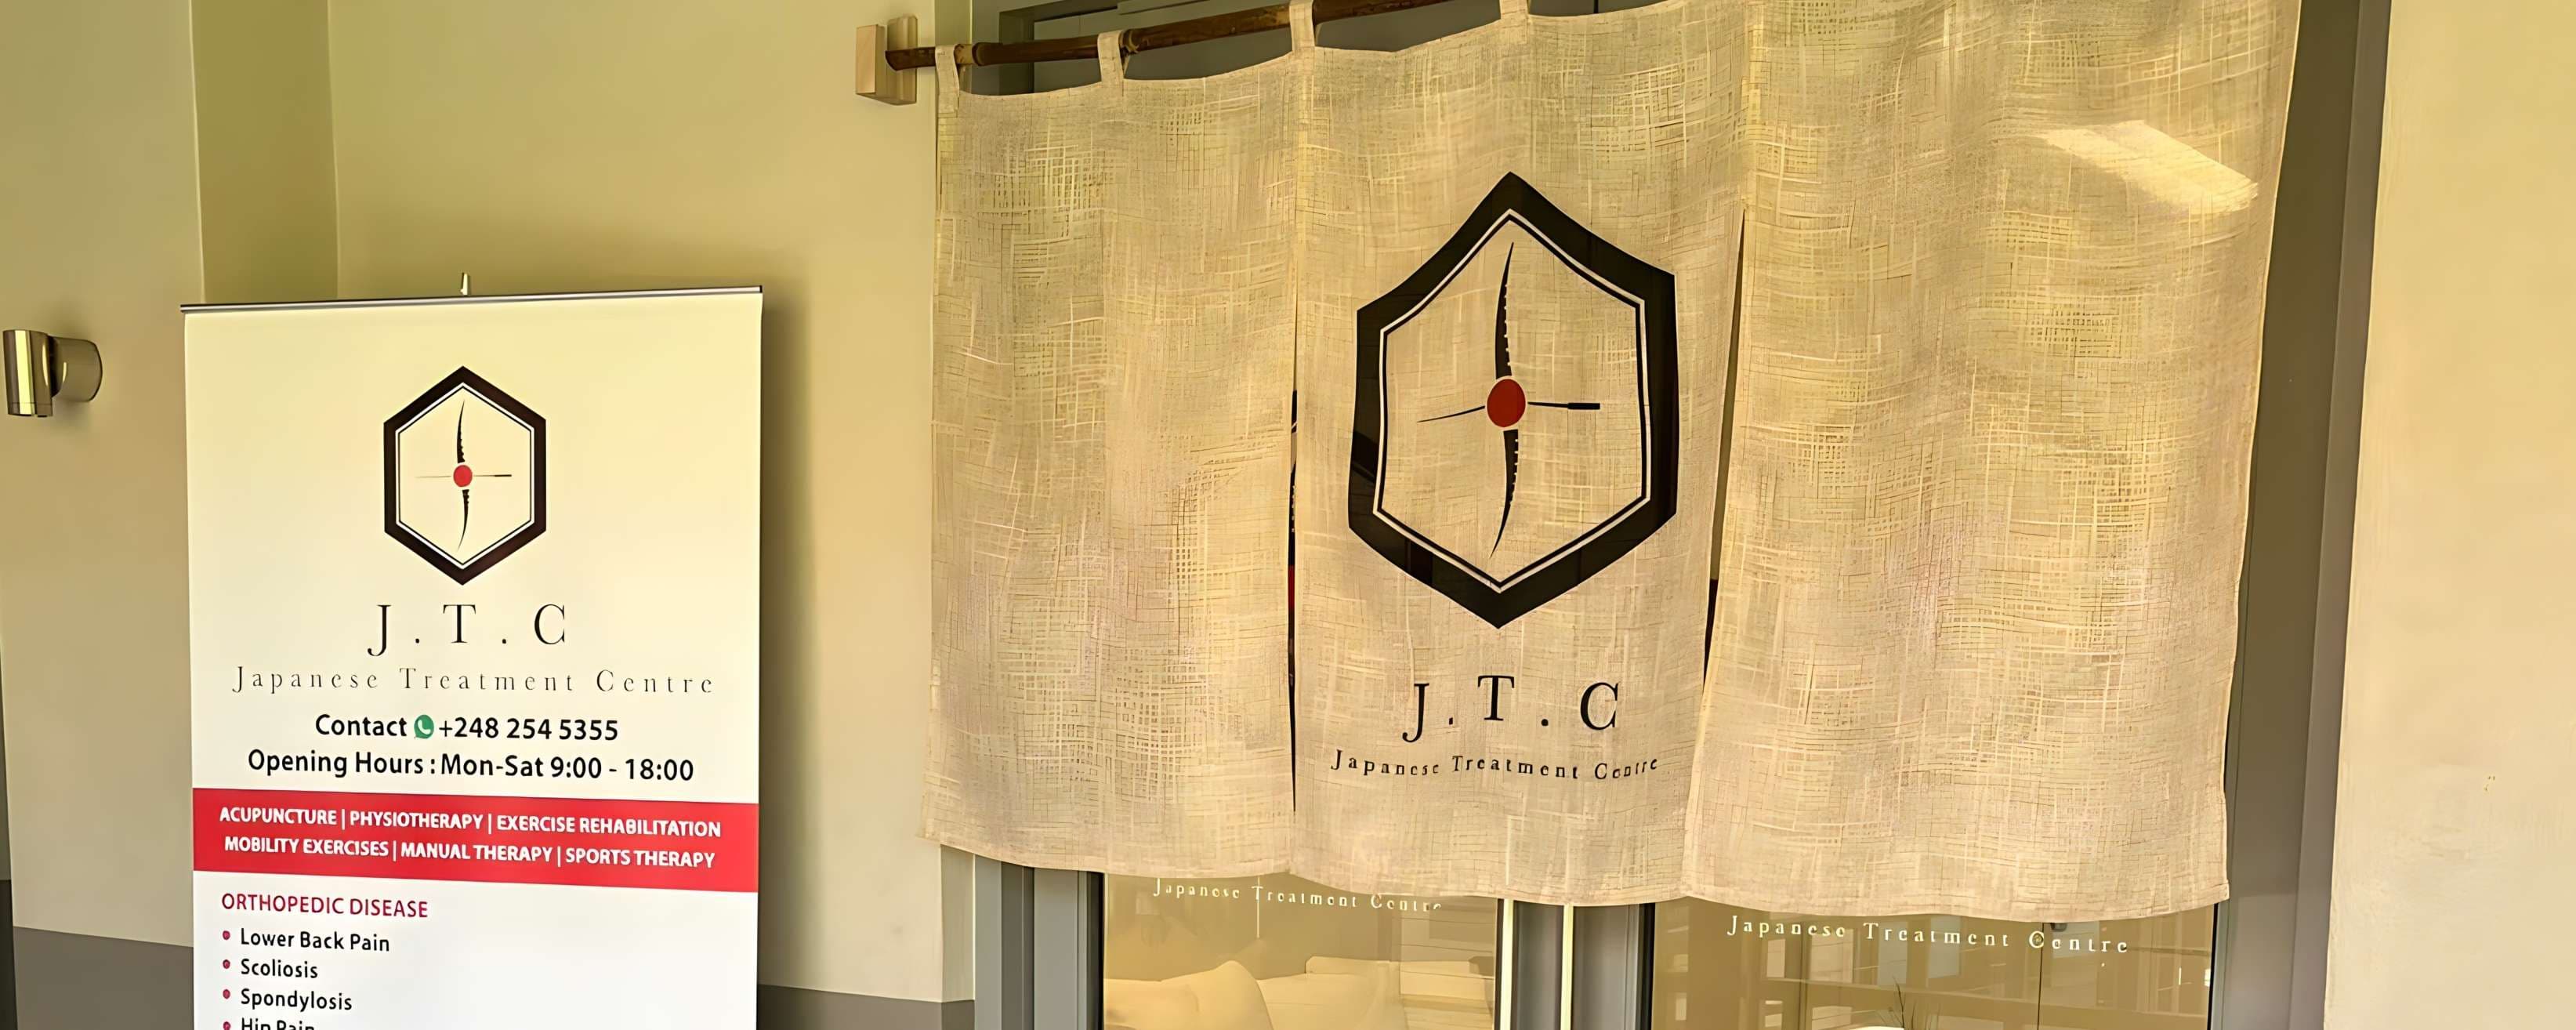 J.T.C Japanese Treatment Centre